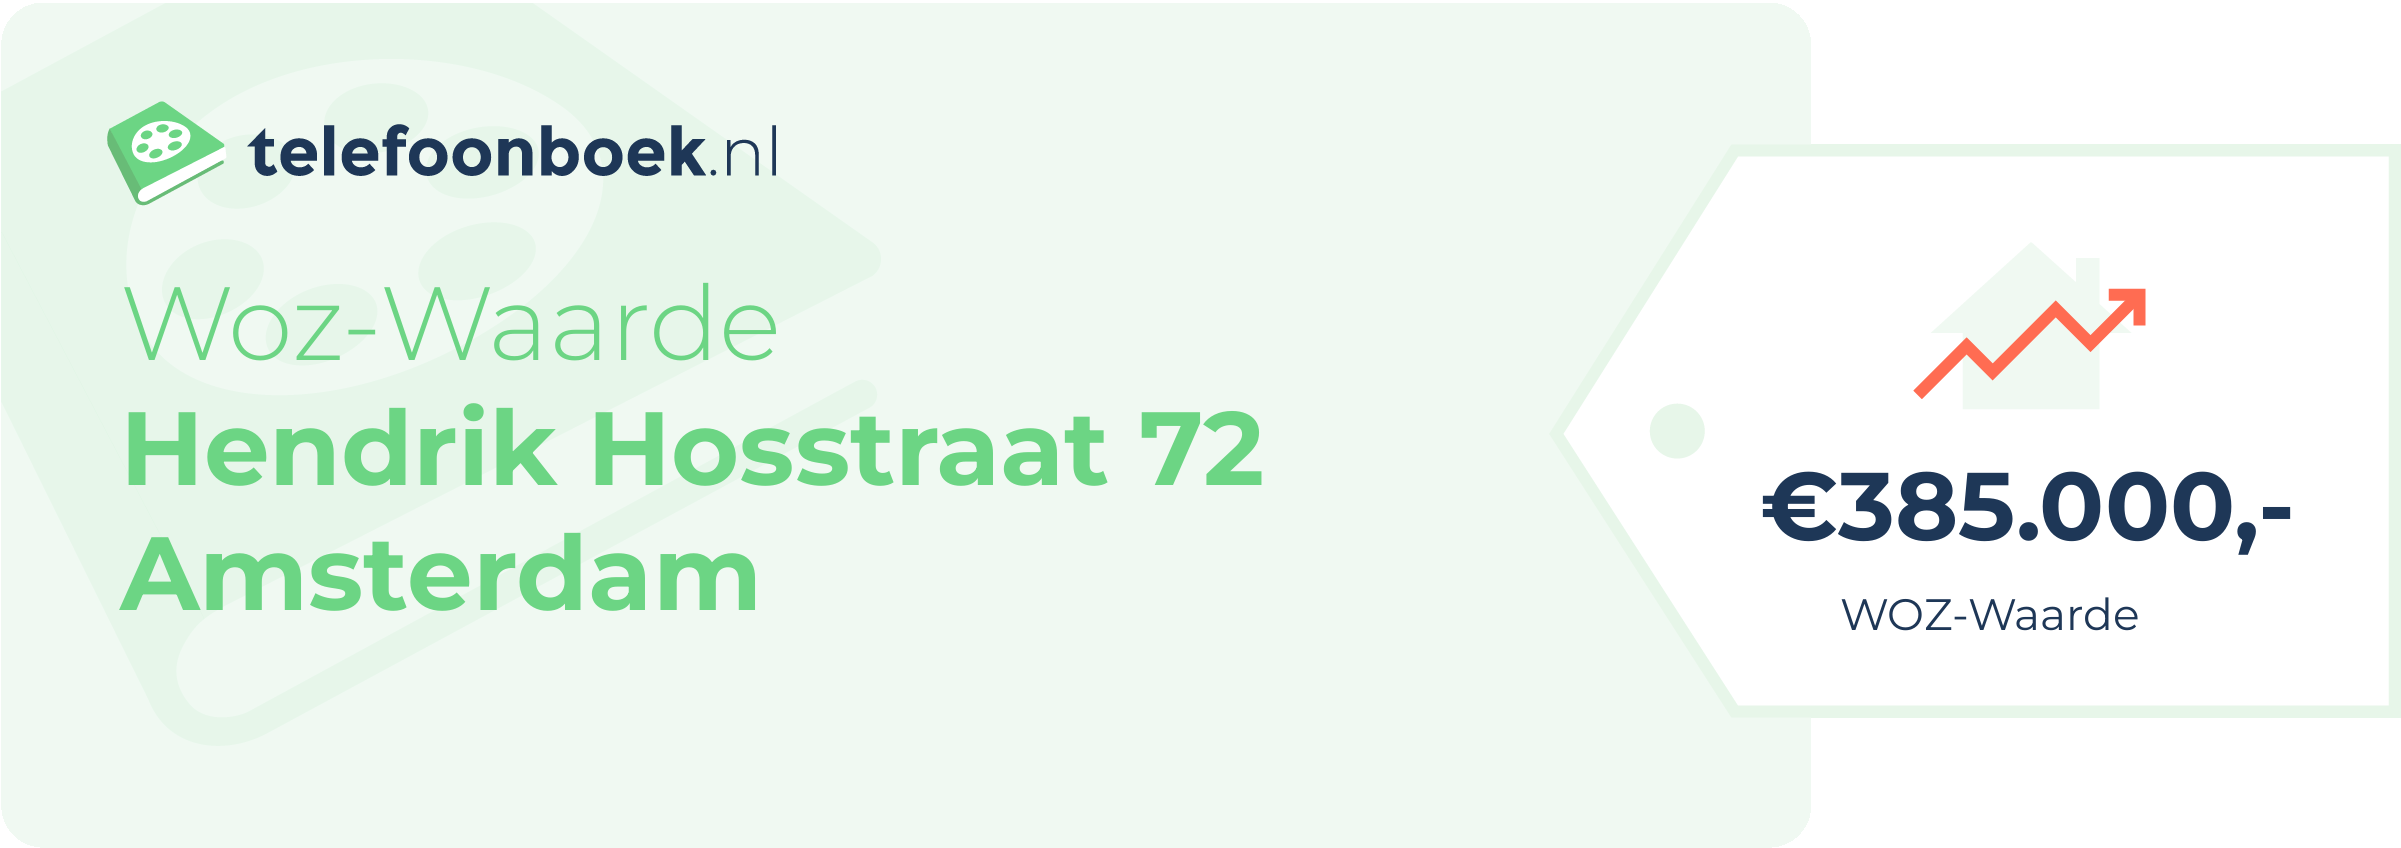 WOZ-waarde Hendrik Hosstraat 72 Amsterdam